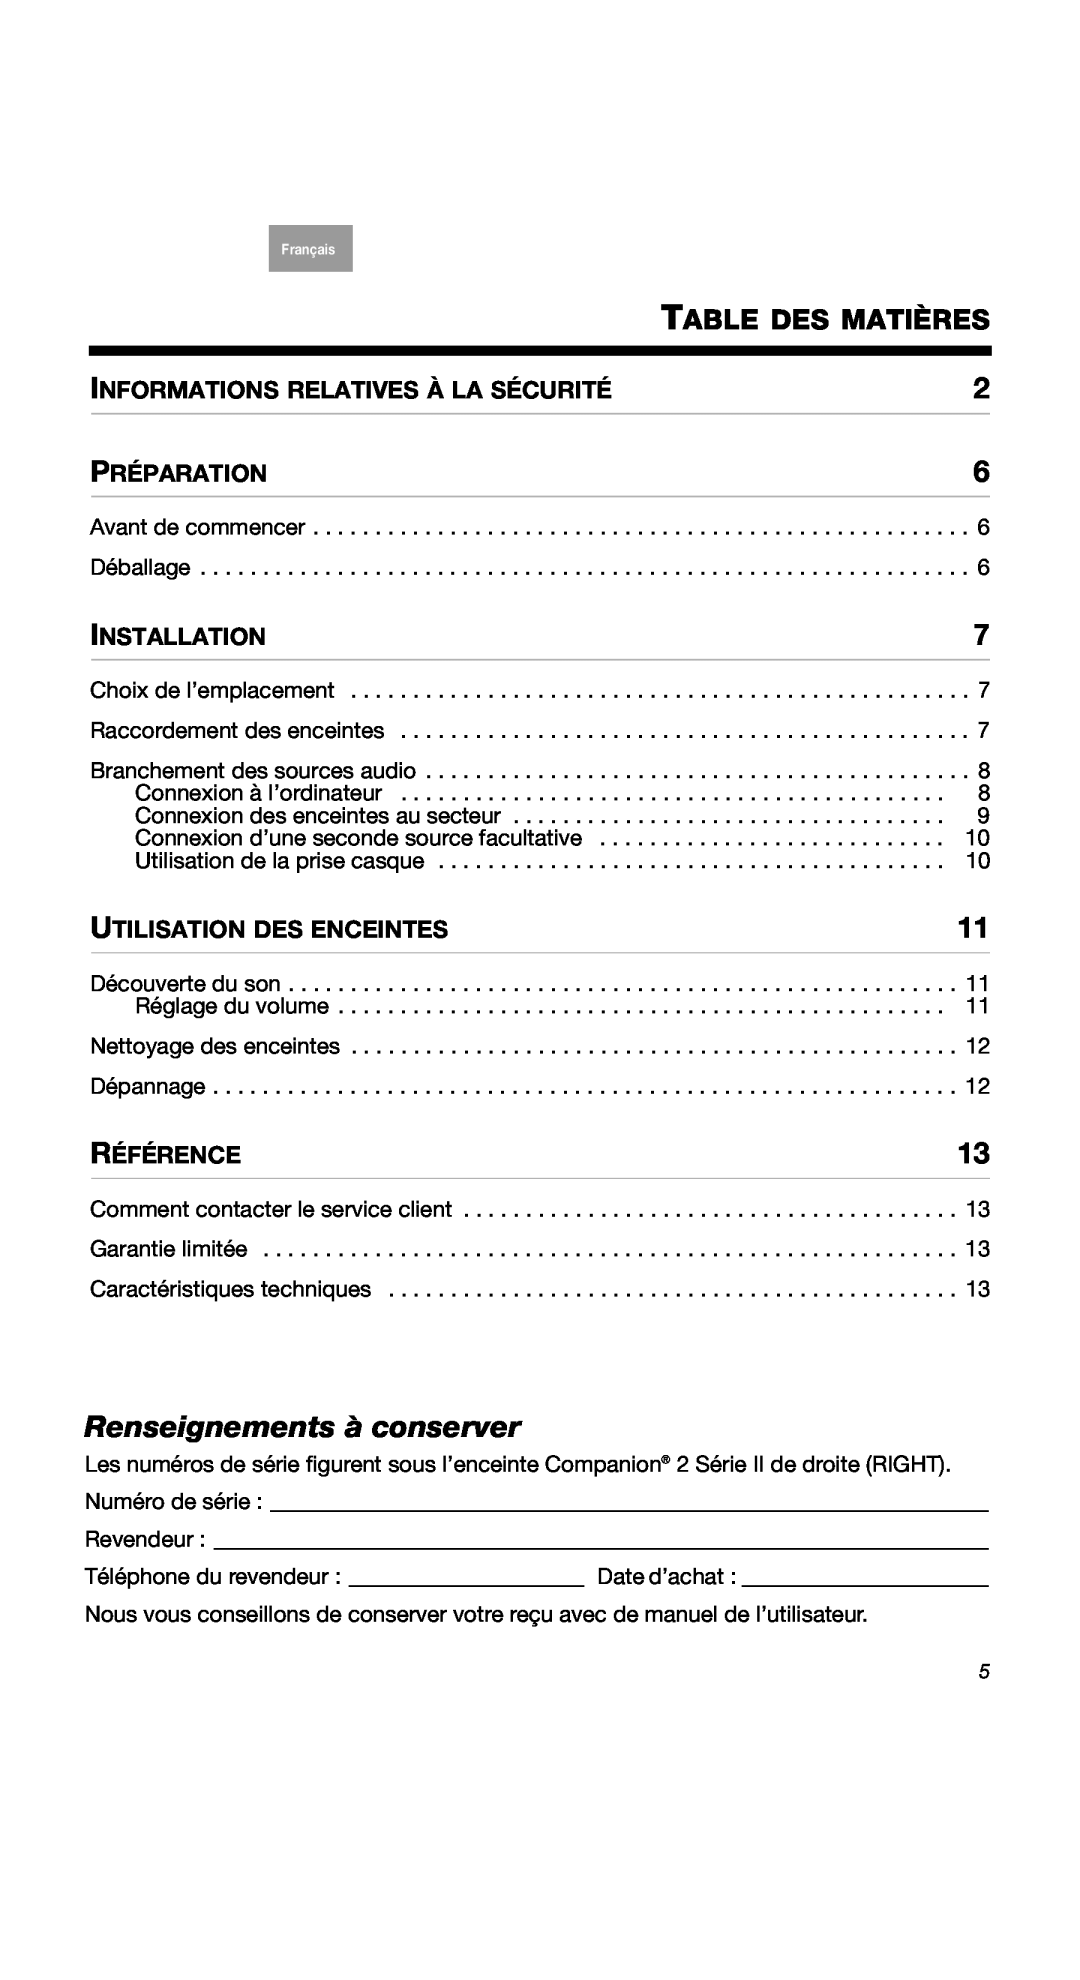 Bose 40274 Renseignements à conserver, Table Des Matières, Préparation, Installation, Utilisation Des Enceintes, Référence 